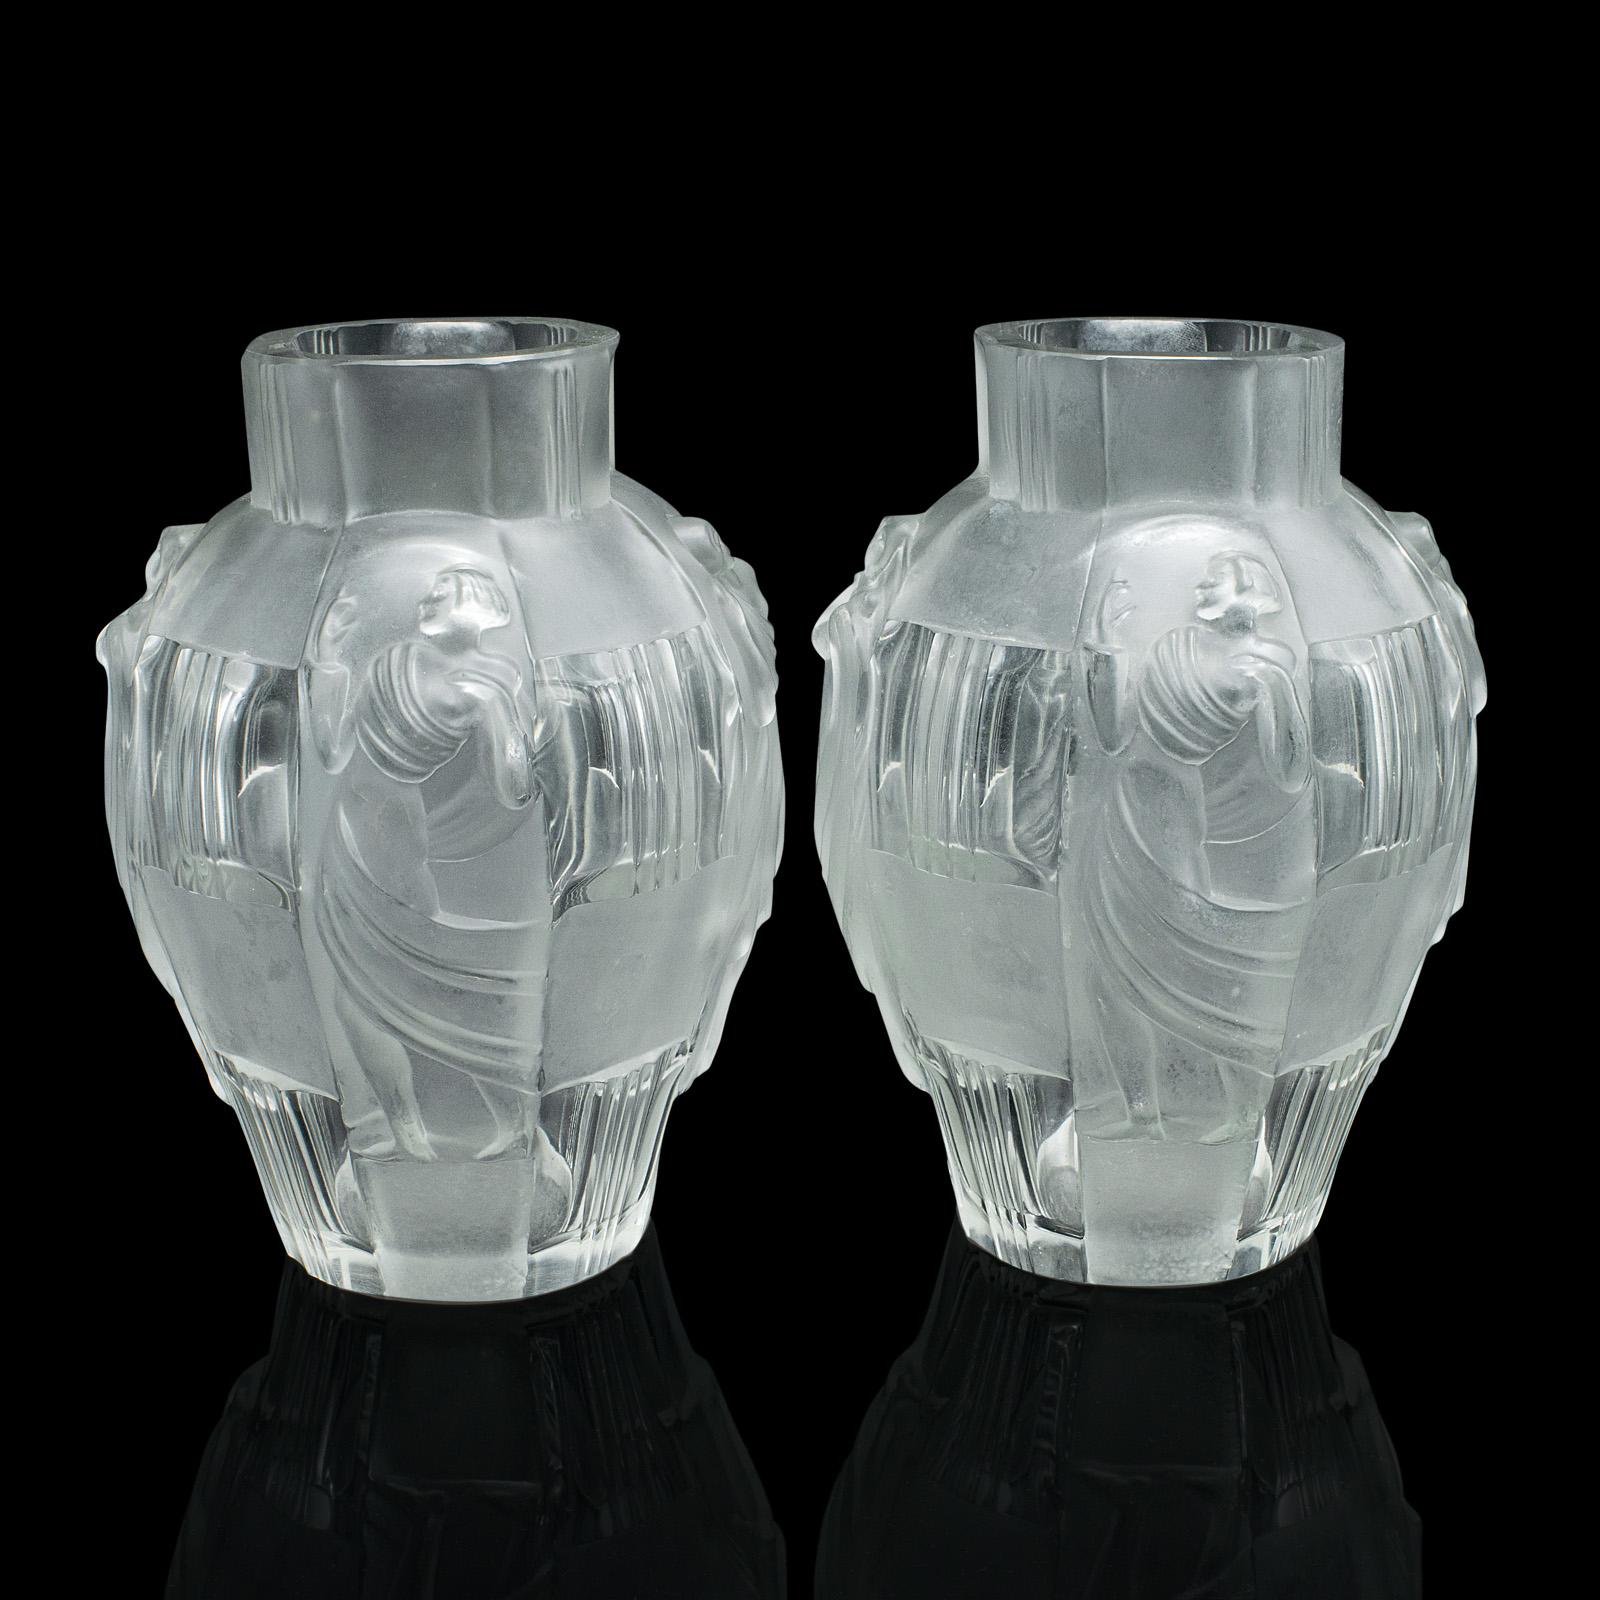 Il s'agit d'une paire de vases à fleurs anciens de style Arte Antiques. Une urne décorative française en verre dépoli à la manière de Lalique, datant du début du 20e siècle, vers 1920.

Des vases merveilleusement évocateurs à l'aspect